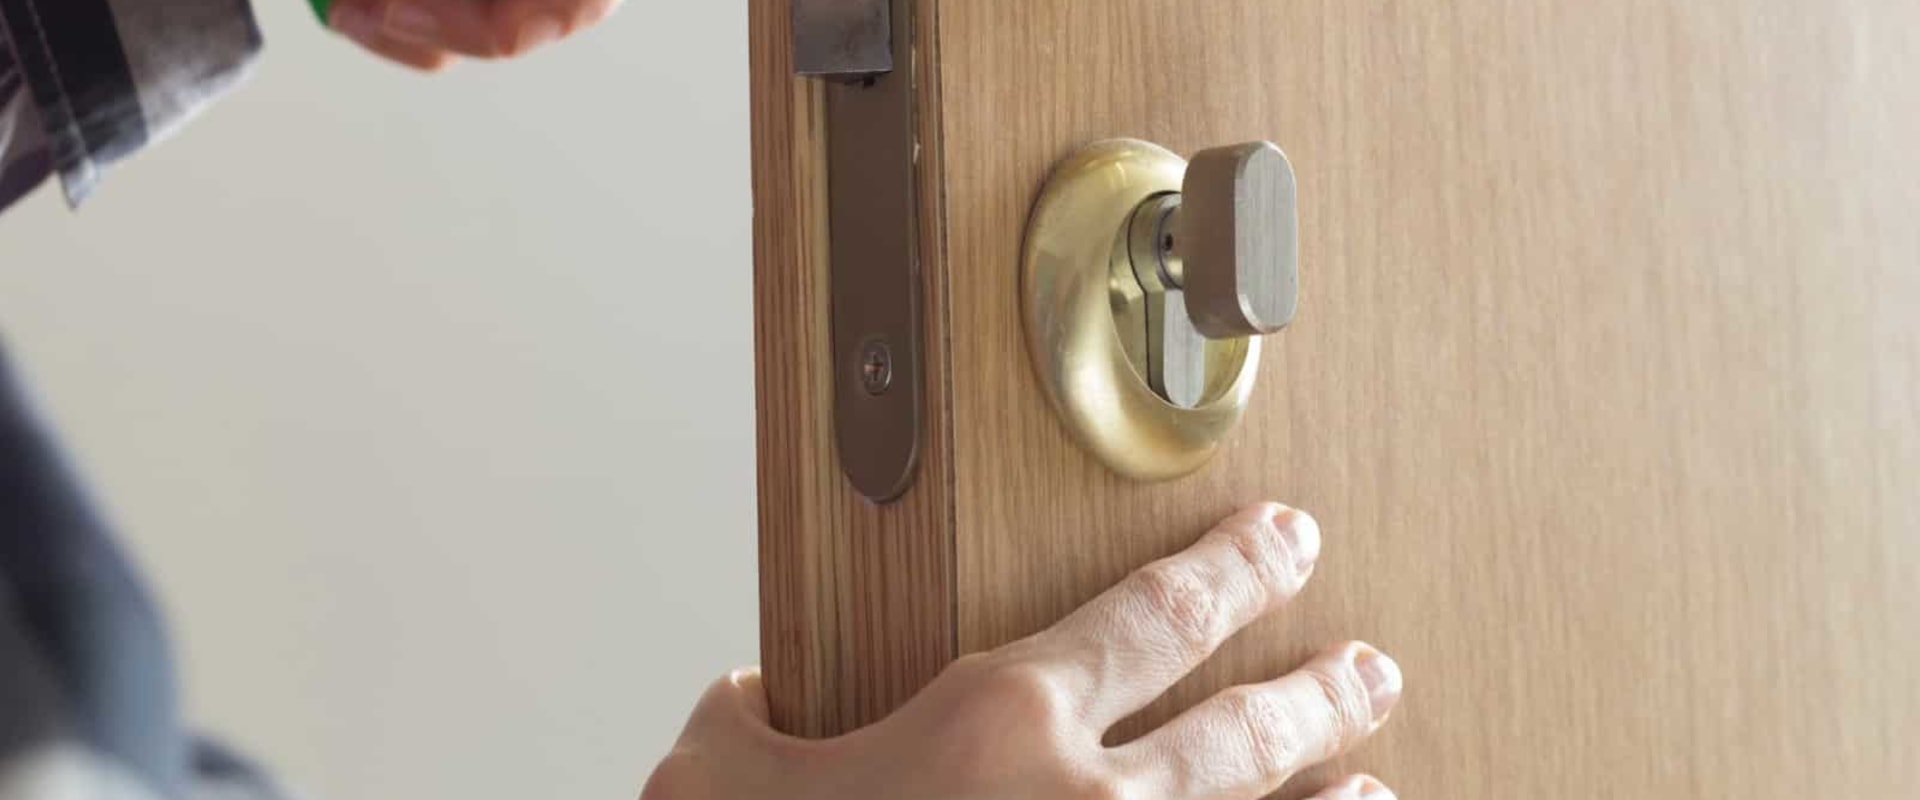 Can a Locksmith Open a Portable Safe?